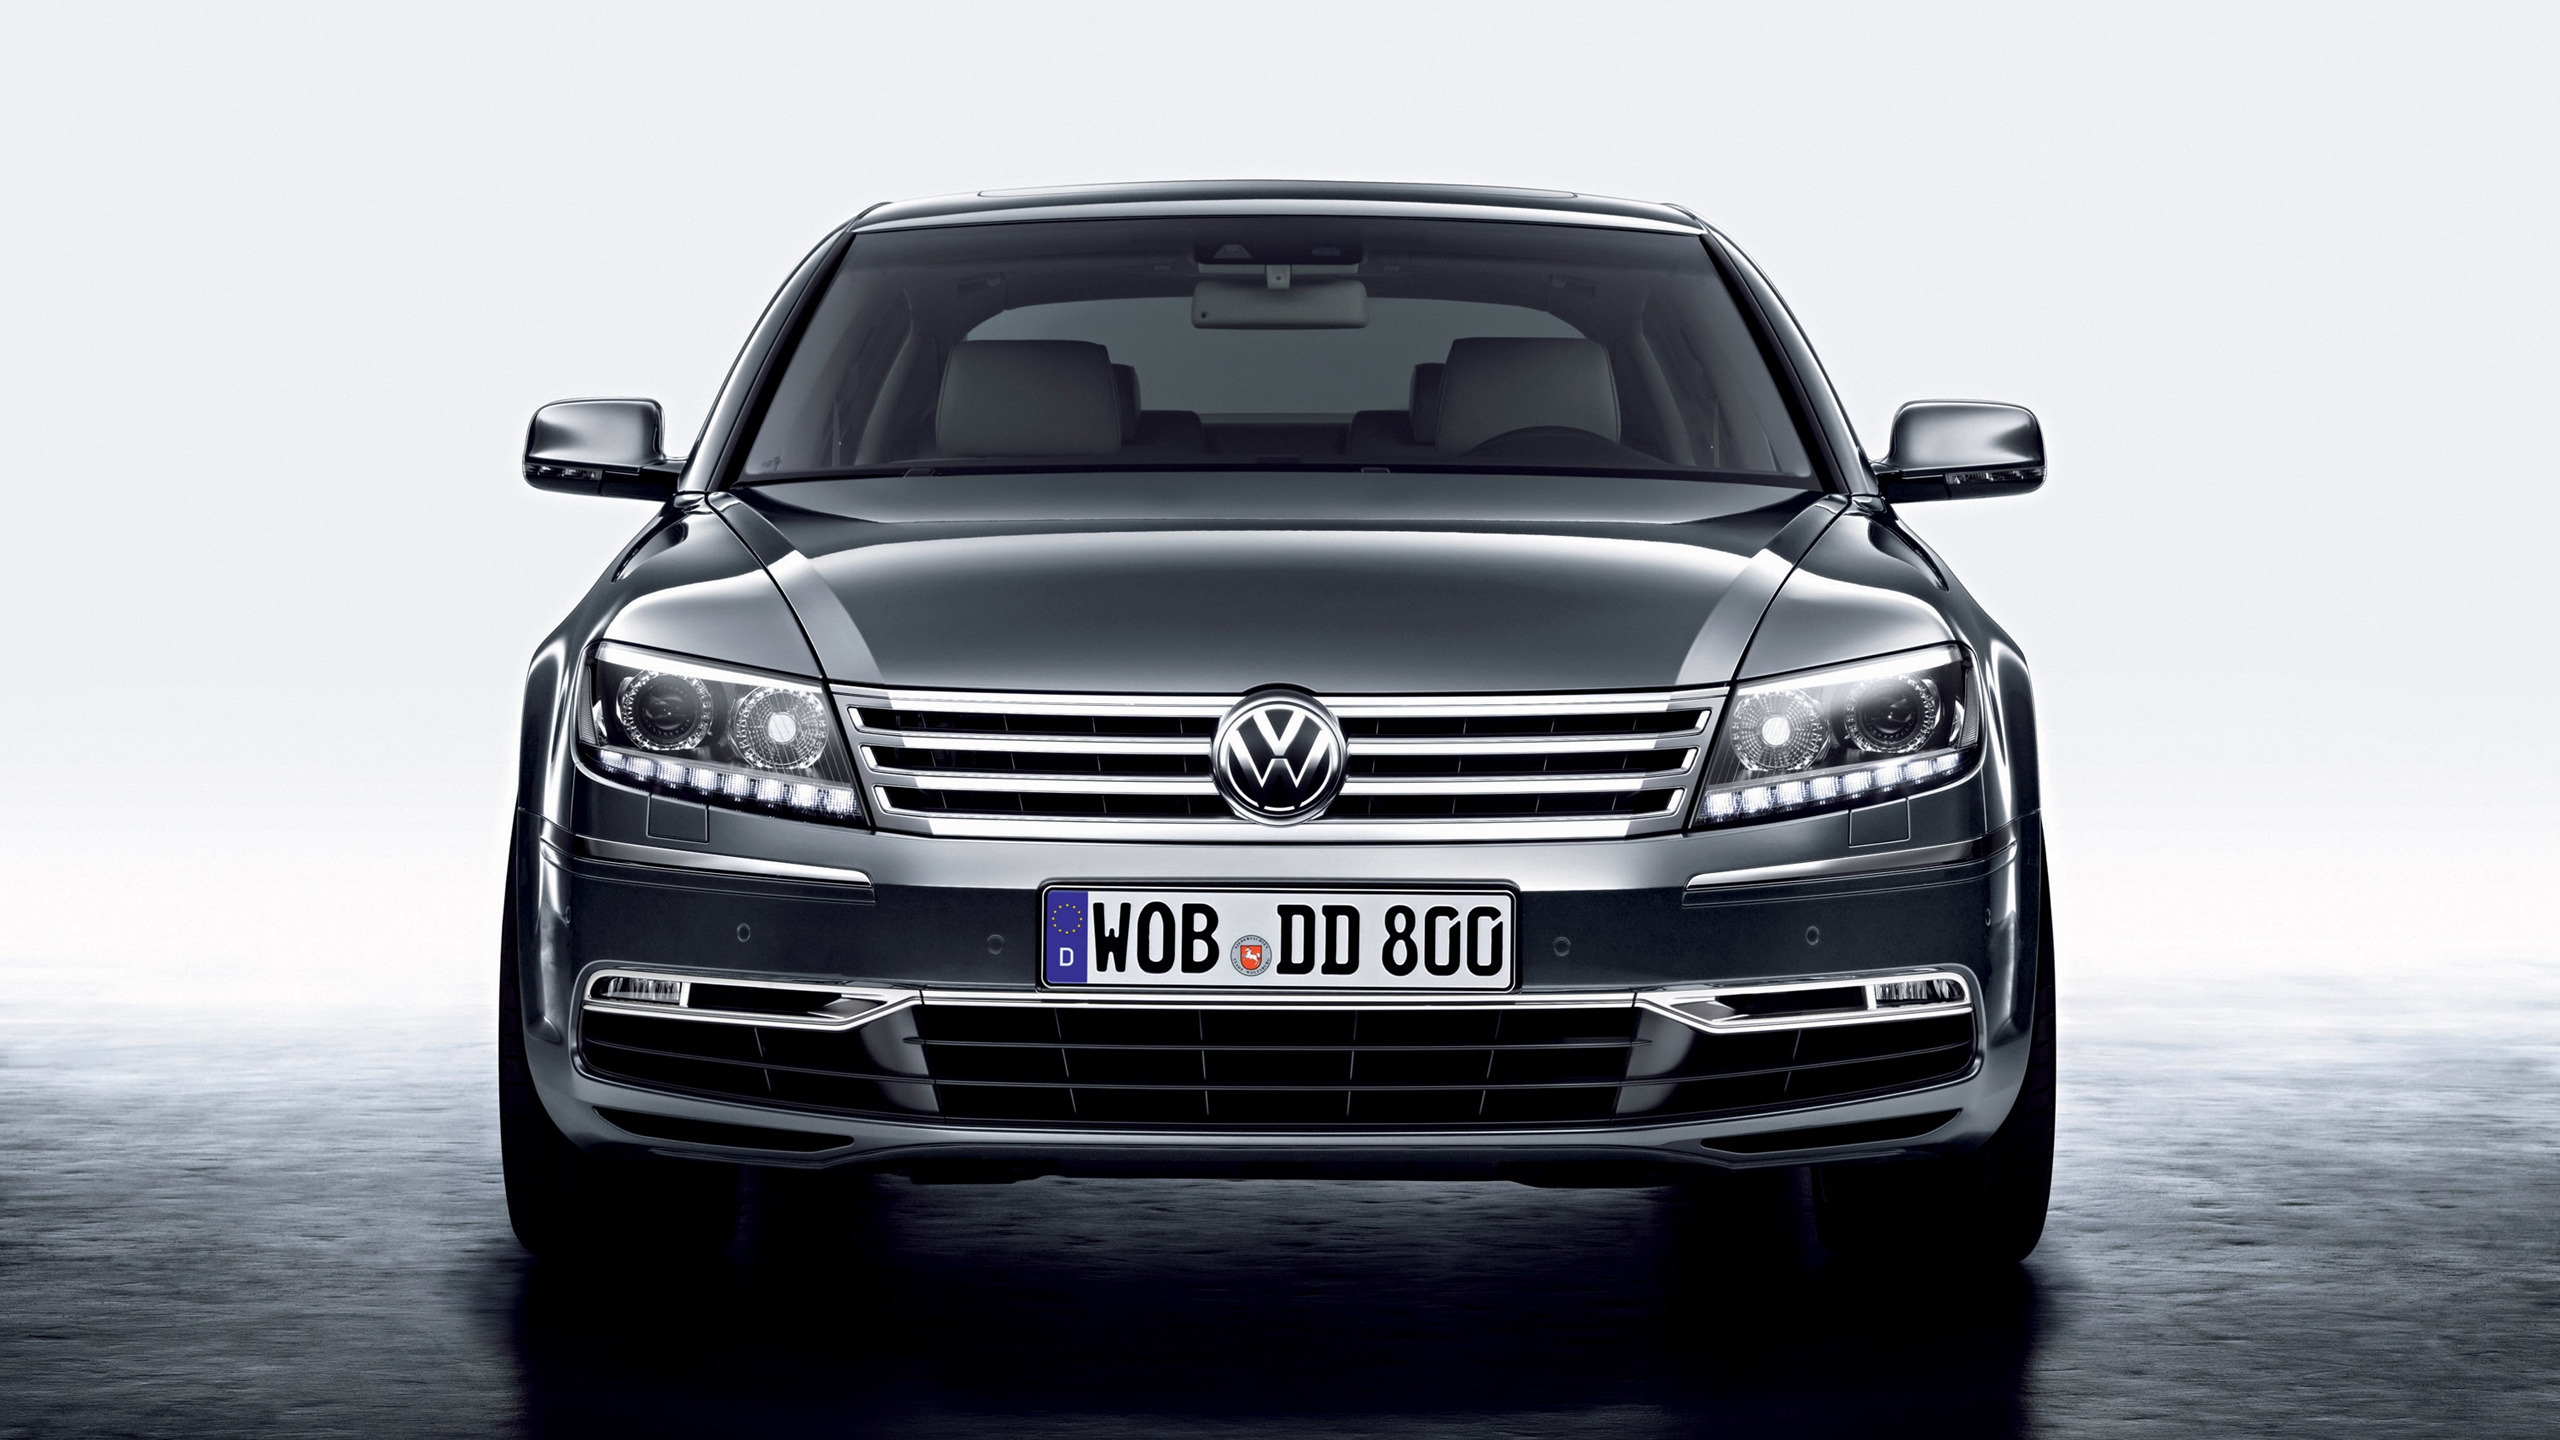 Volkswagen Phaeton Front for 2560x1440 HDTV resolution